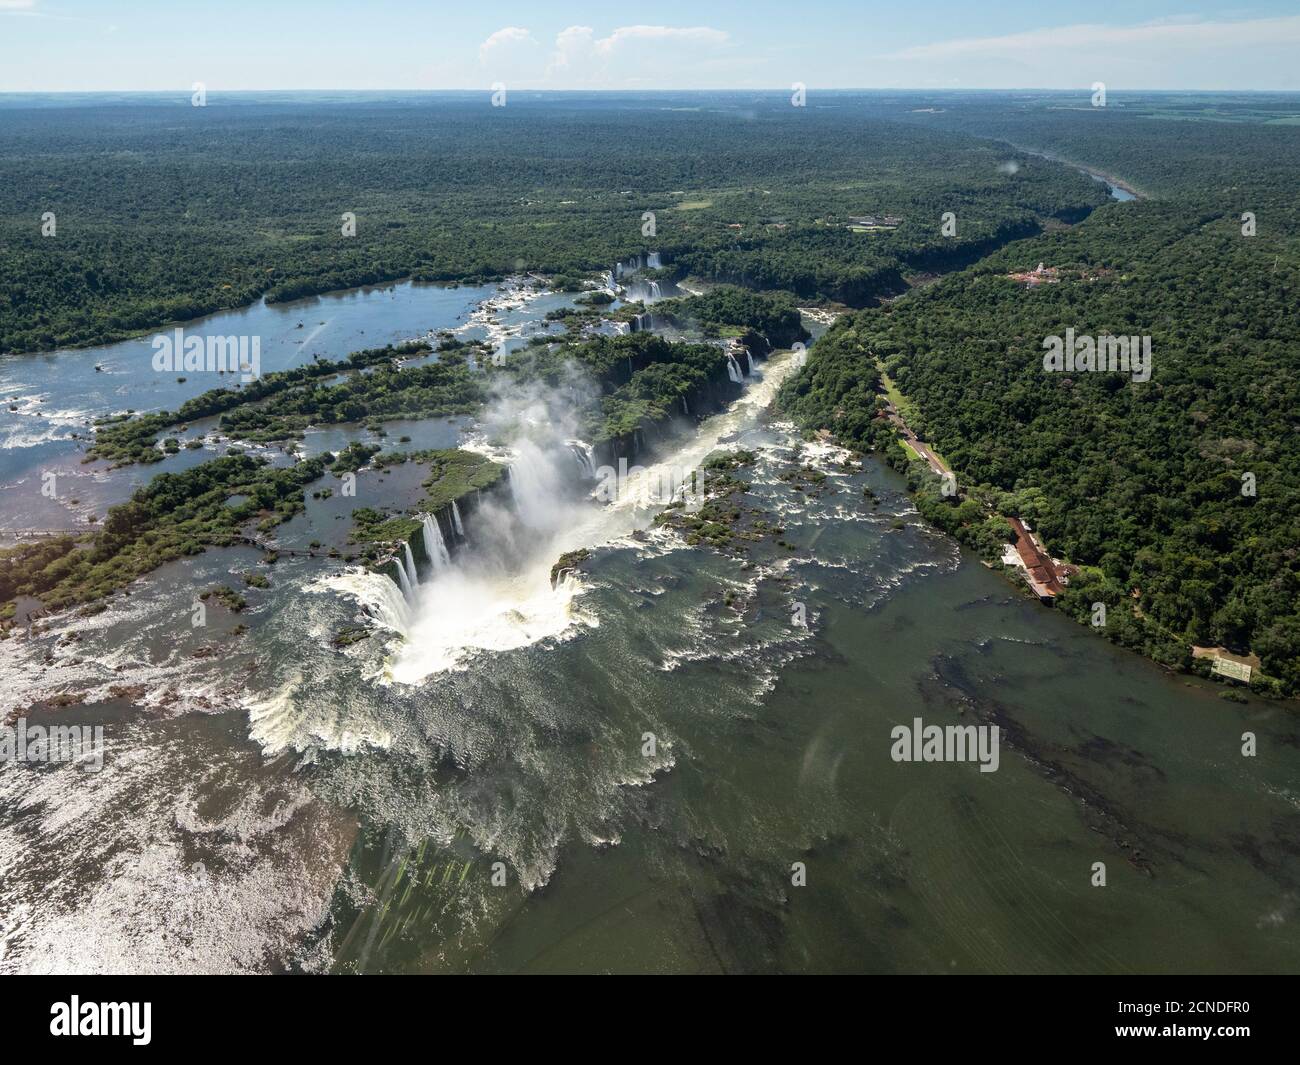 Vue aérienne en hélicoptère des chutes d'Iguaçu (Cataratas do Iguaçu), site classé au patrimoine mondial de l'UNESCO, Parana, Brésil Banque D'Images